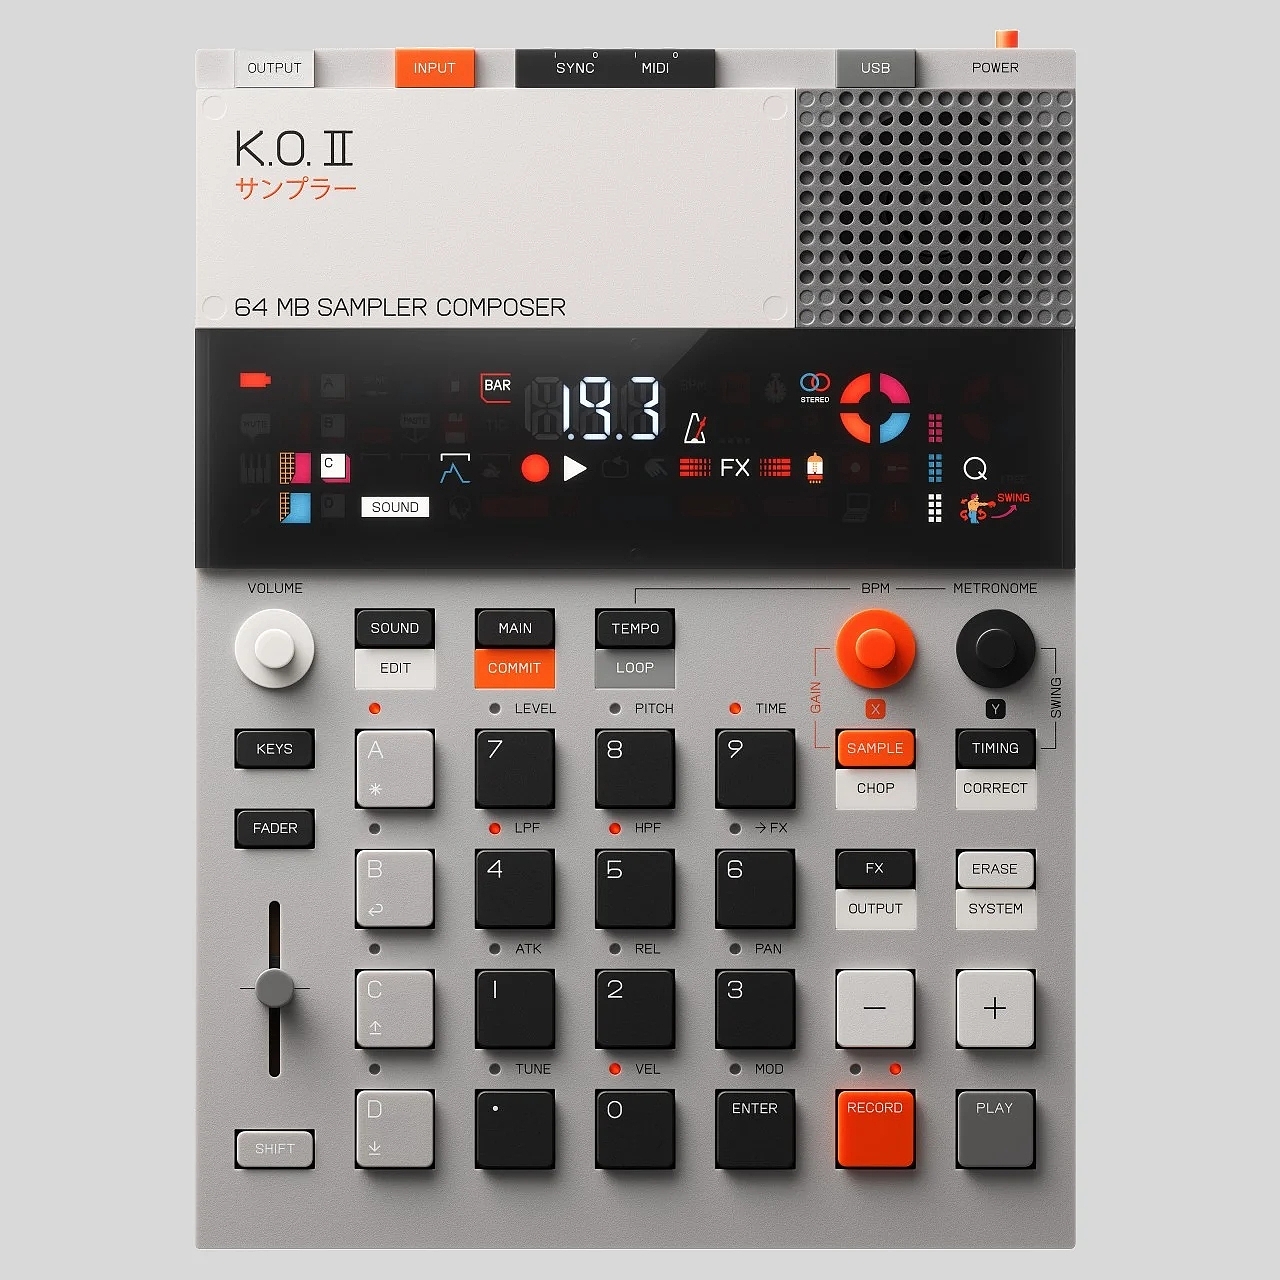 音频采样器，EP-133 K.O. II，电子产品，数码，